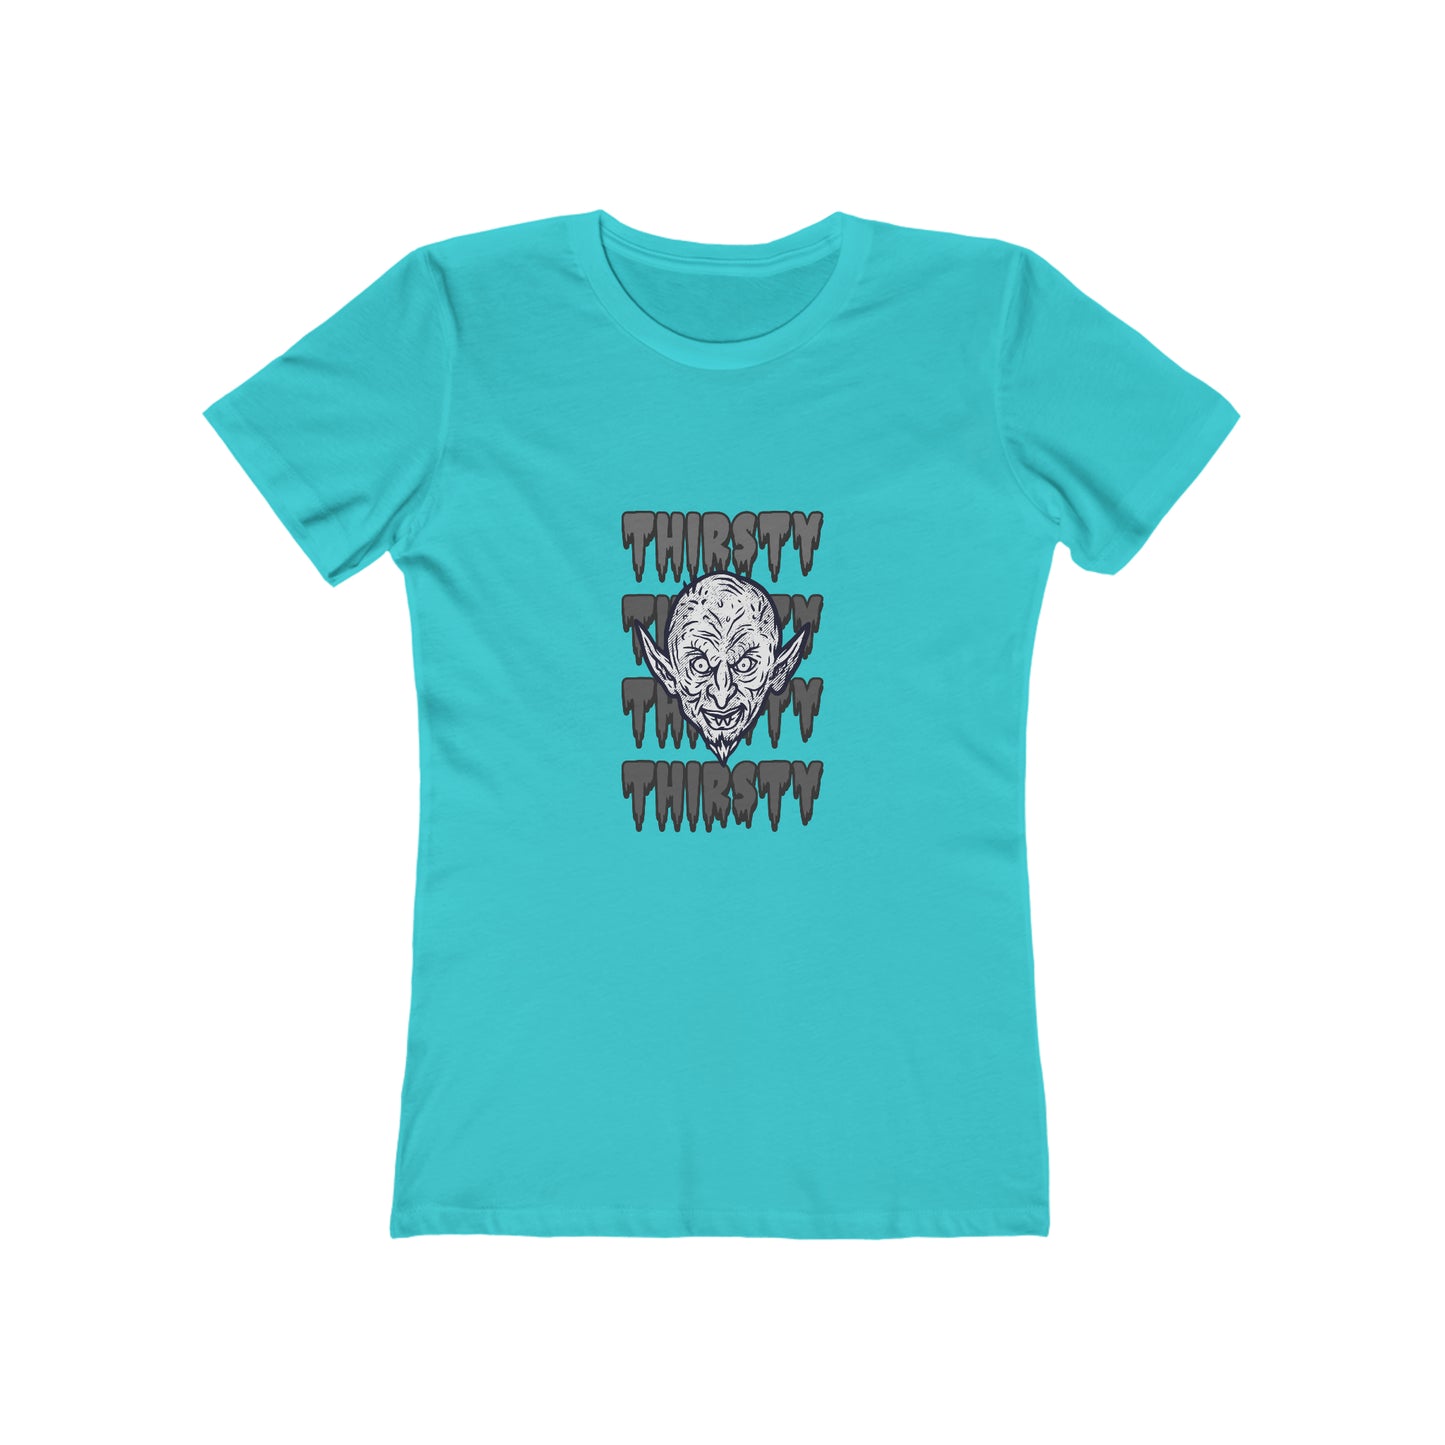 Thirsty - Women's T-shirt